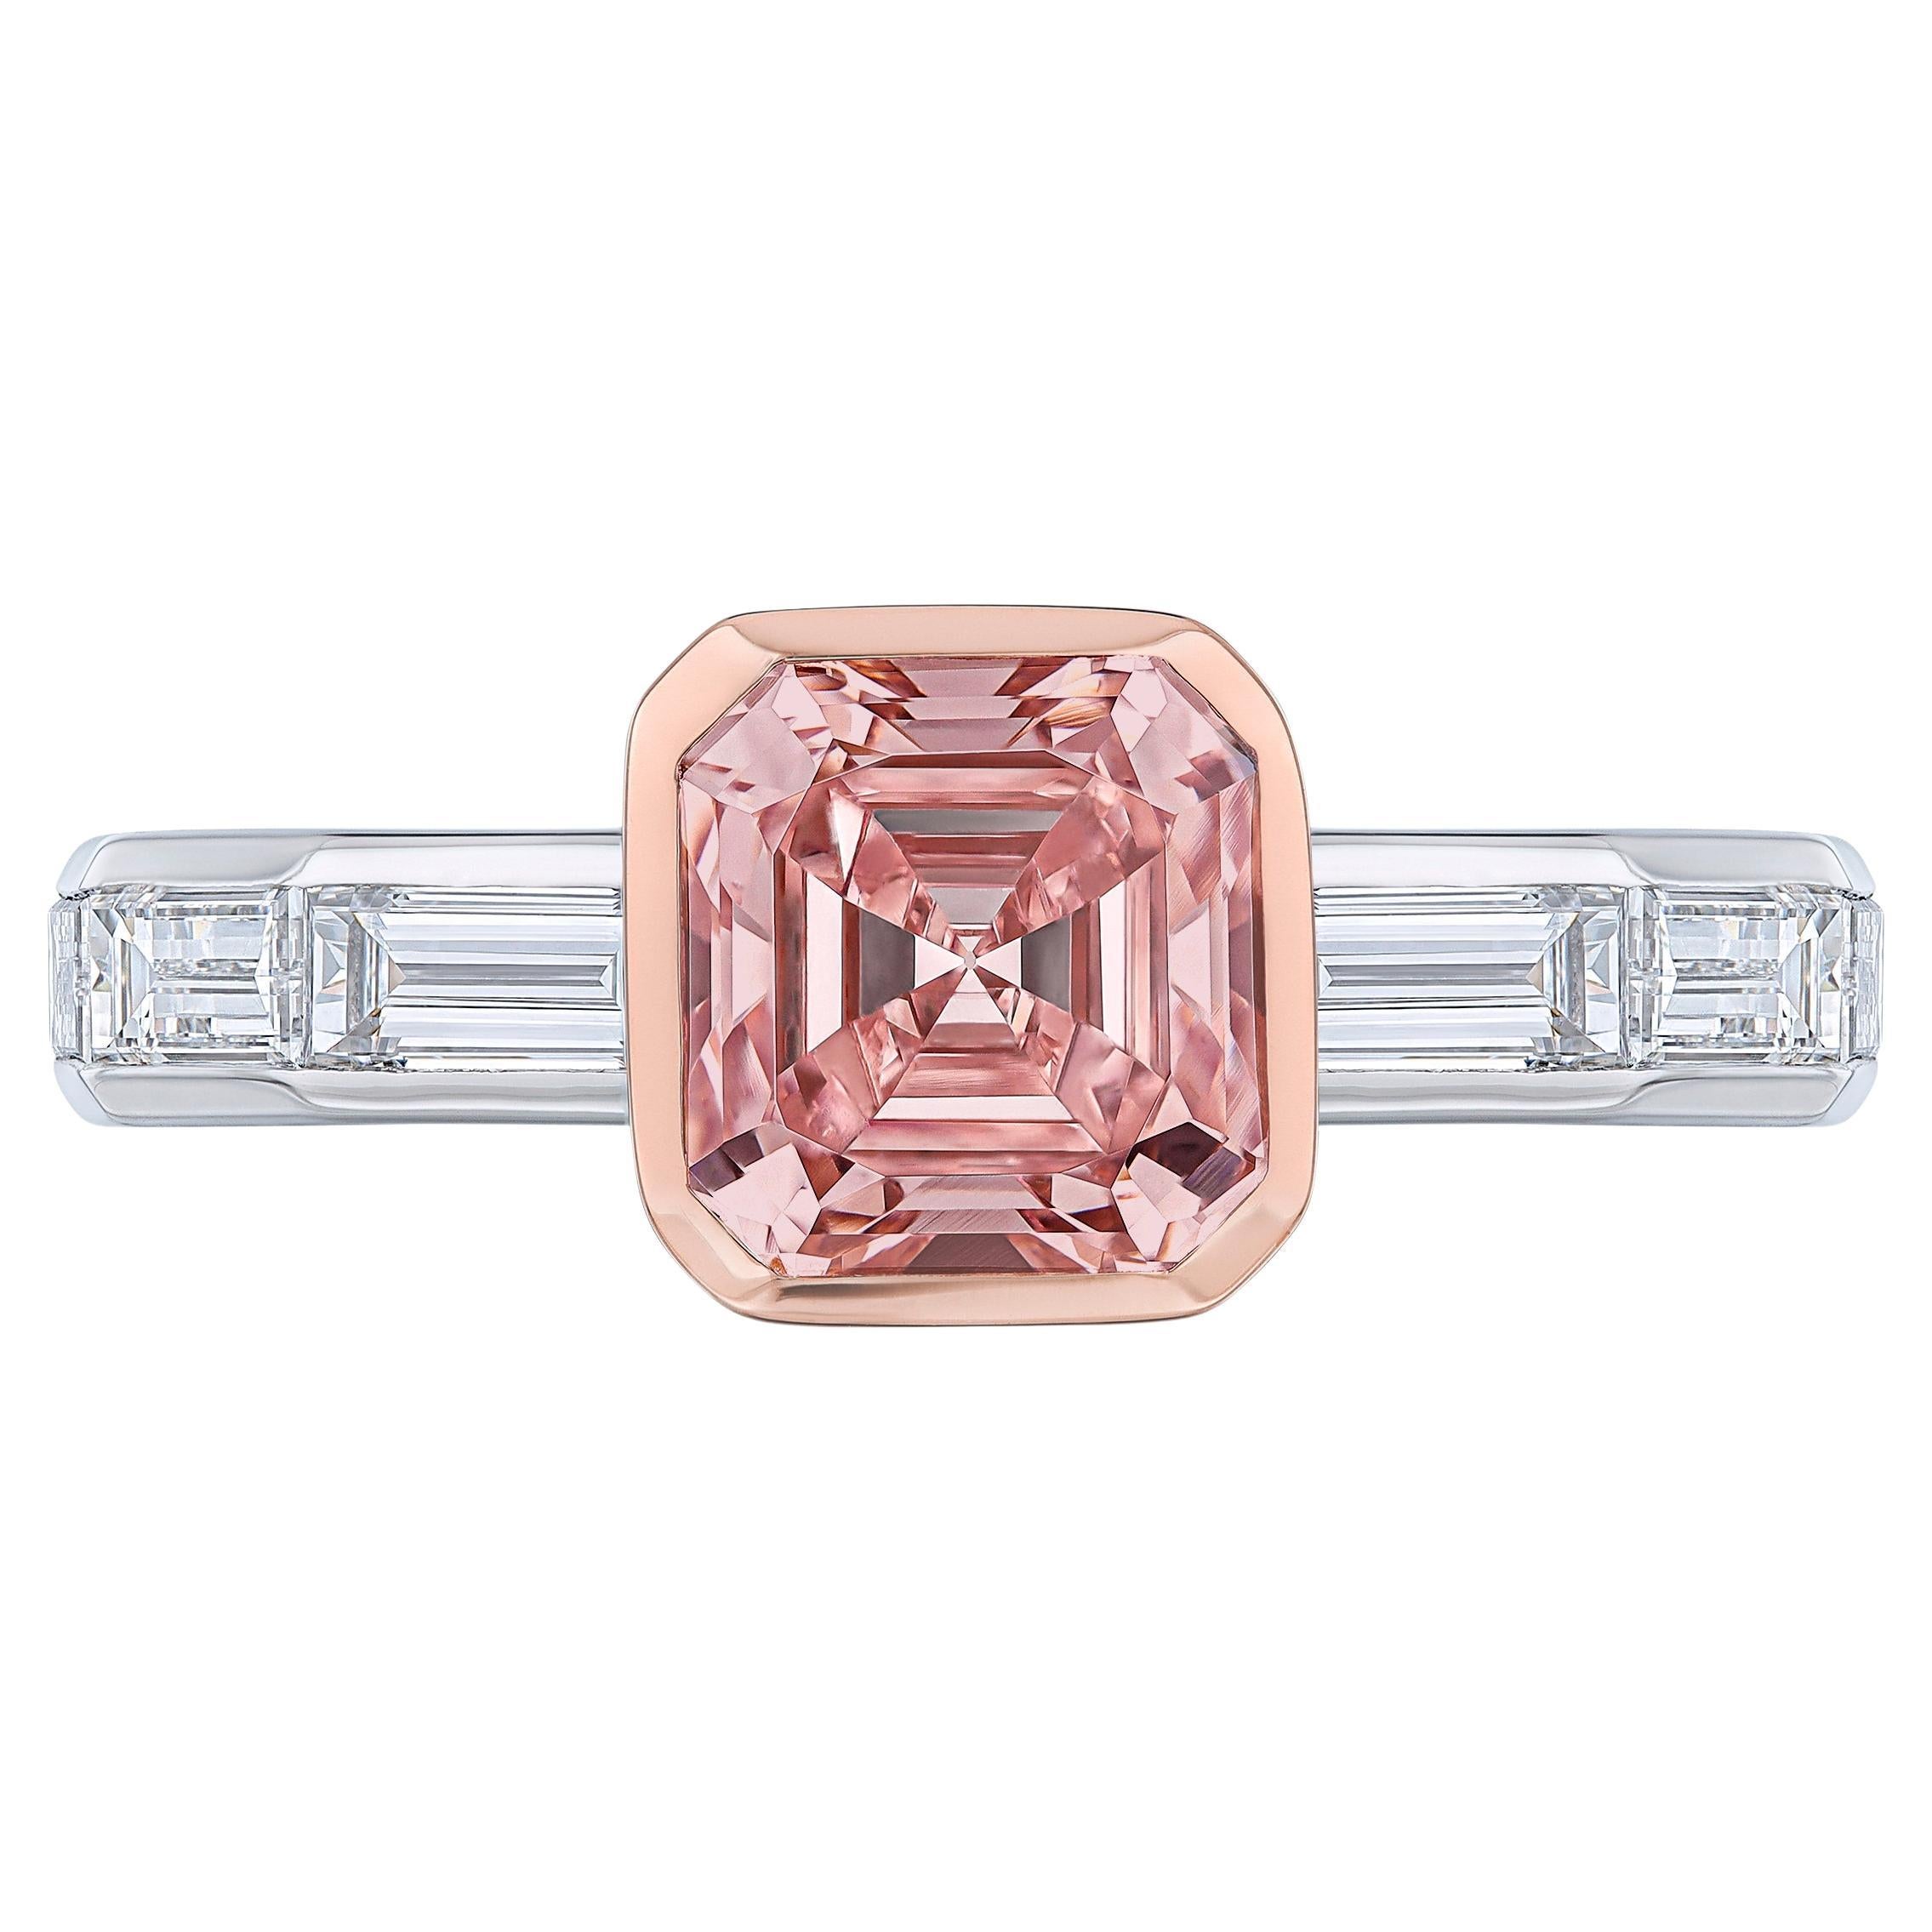 Verlobungsring mit GIA-zertifiziertem 1,57 Karat rosafarbenem Fancy-Diamant im Asscher-Schliff